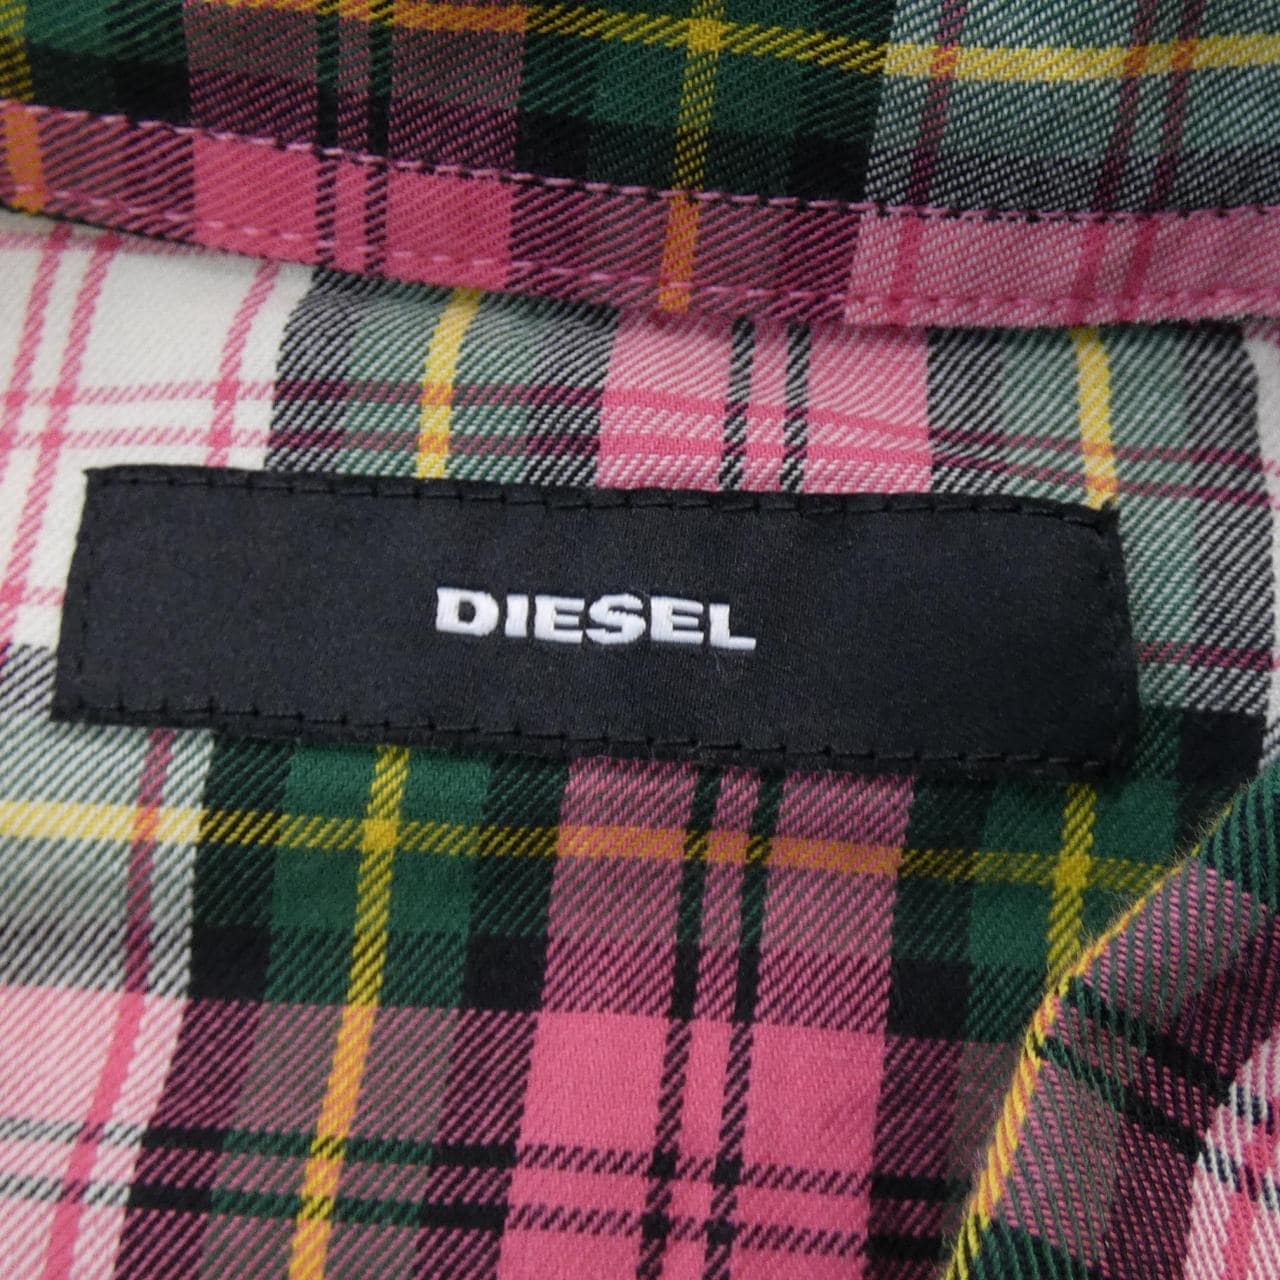 Diesel DIESEL shirt